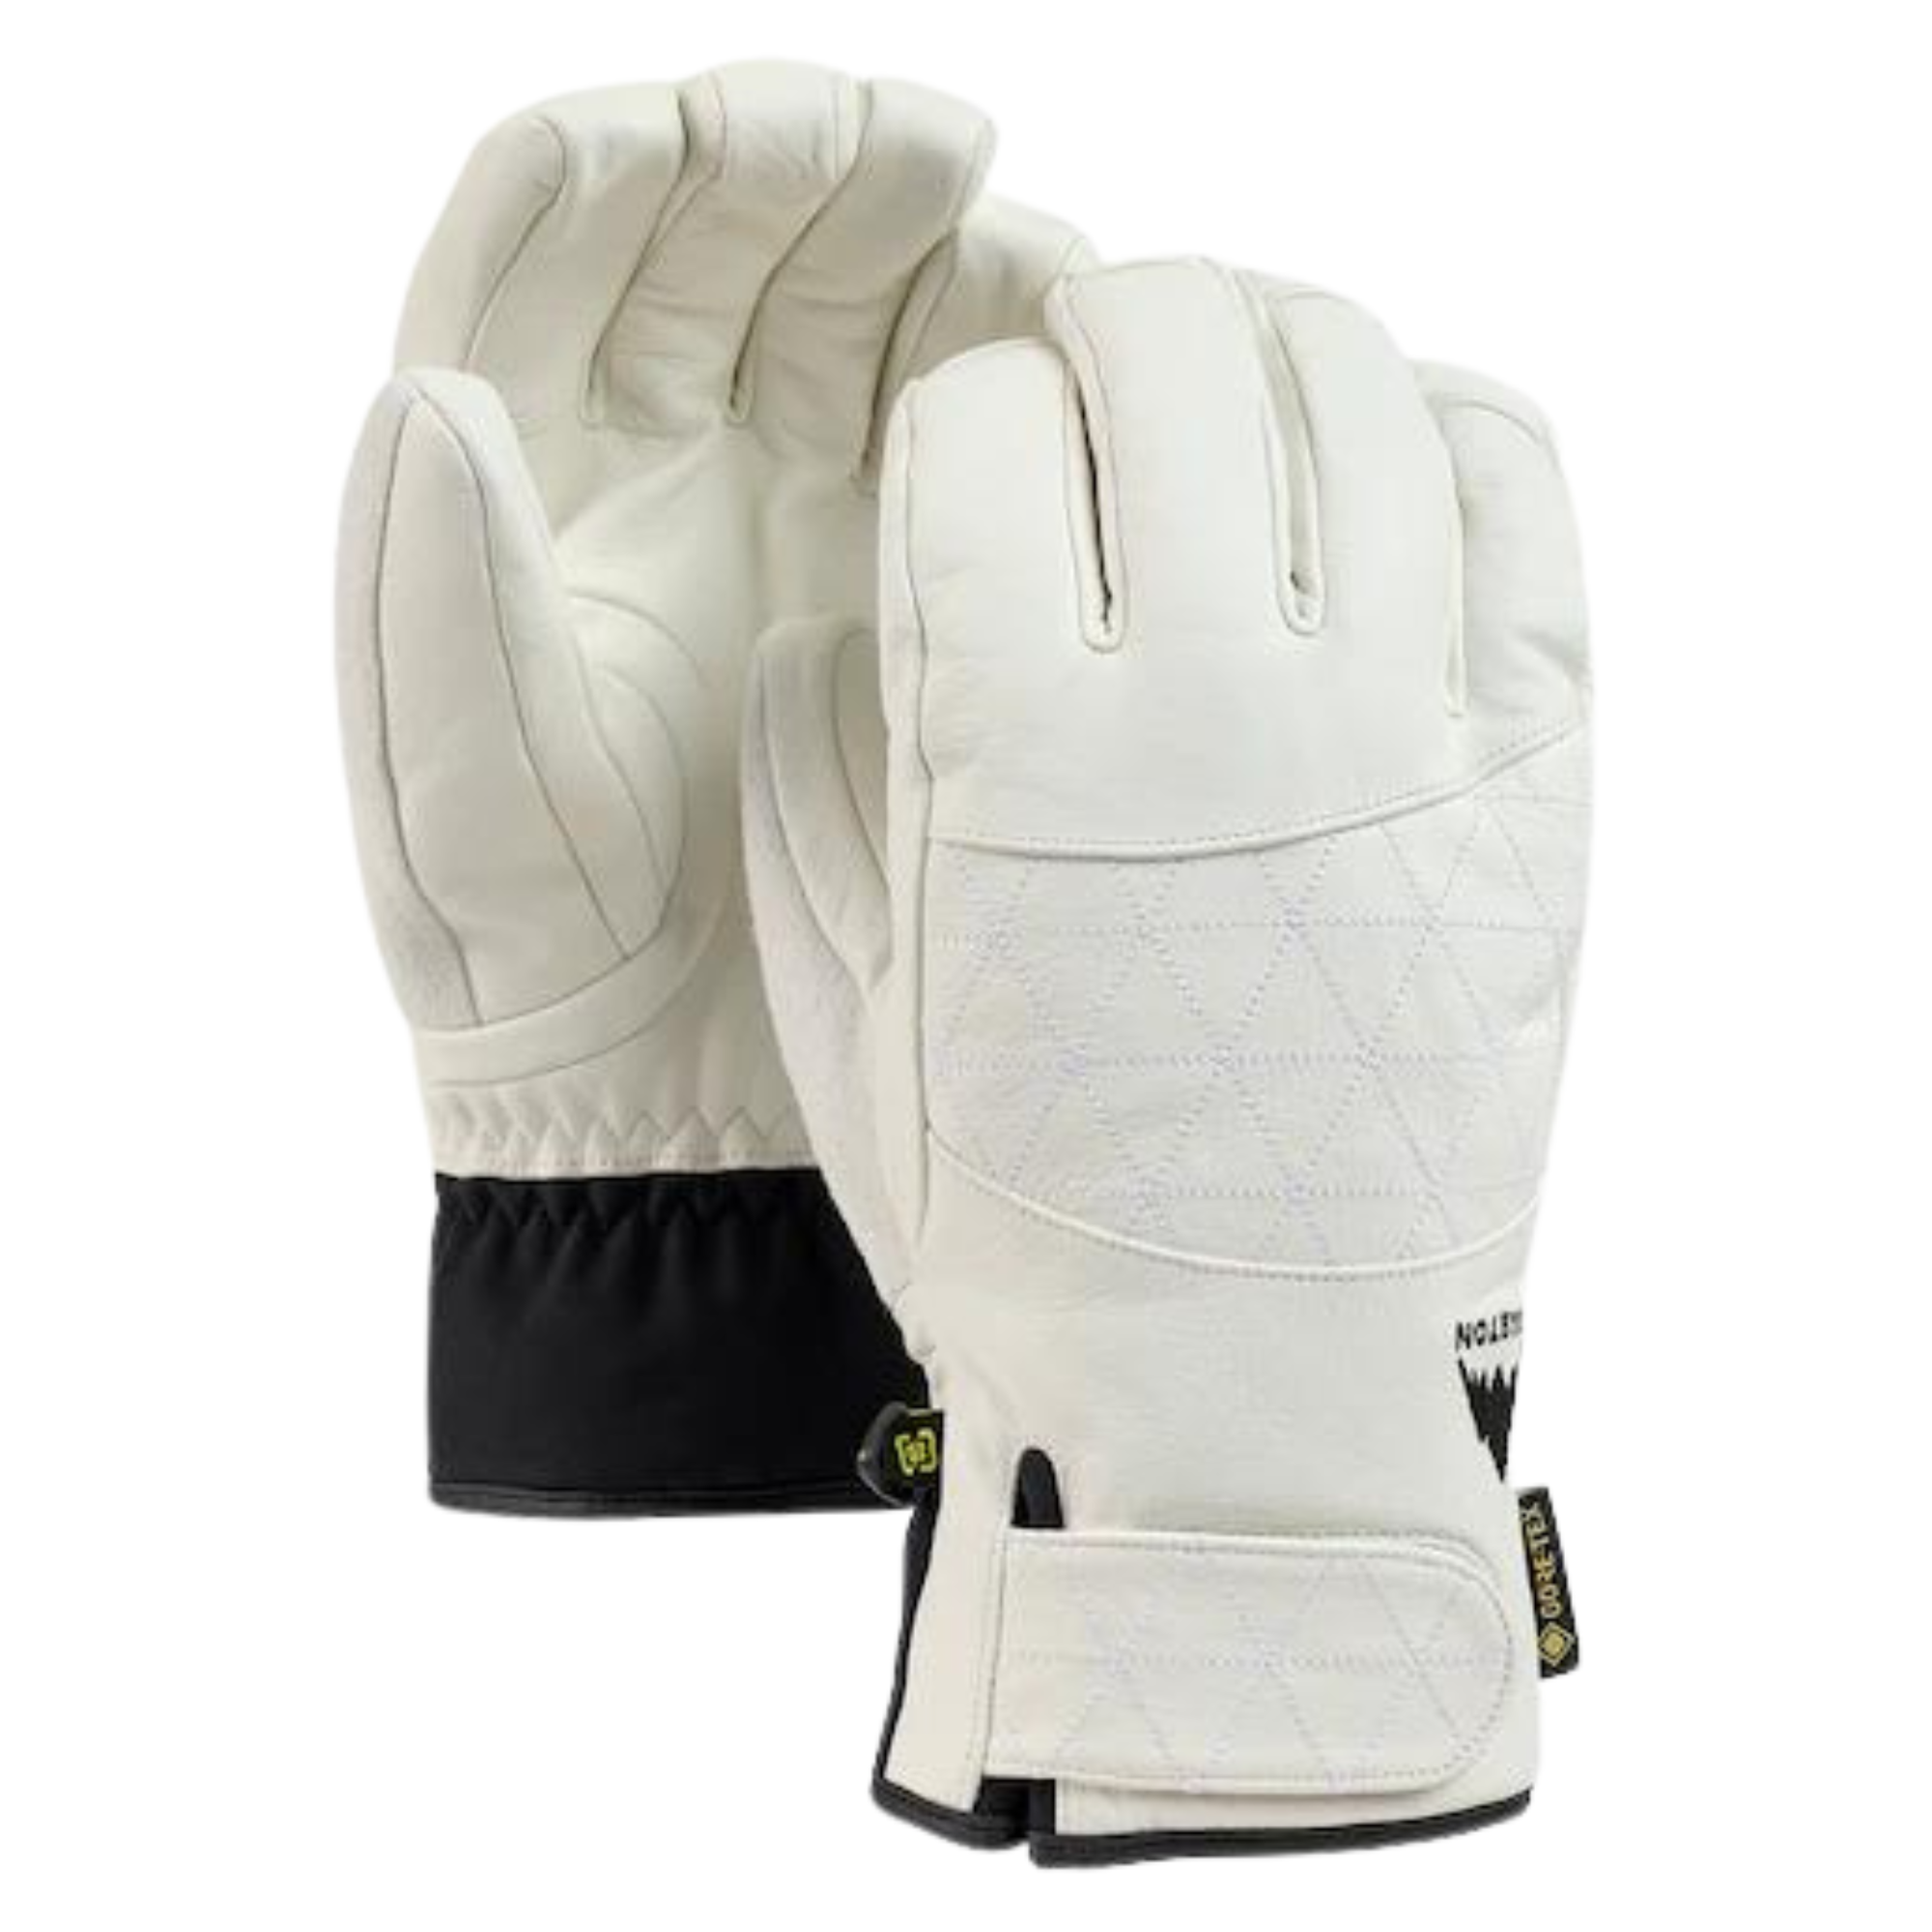 Burton Women's Gondy GORE-TEX Leather Glove - Stout White